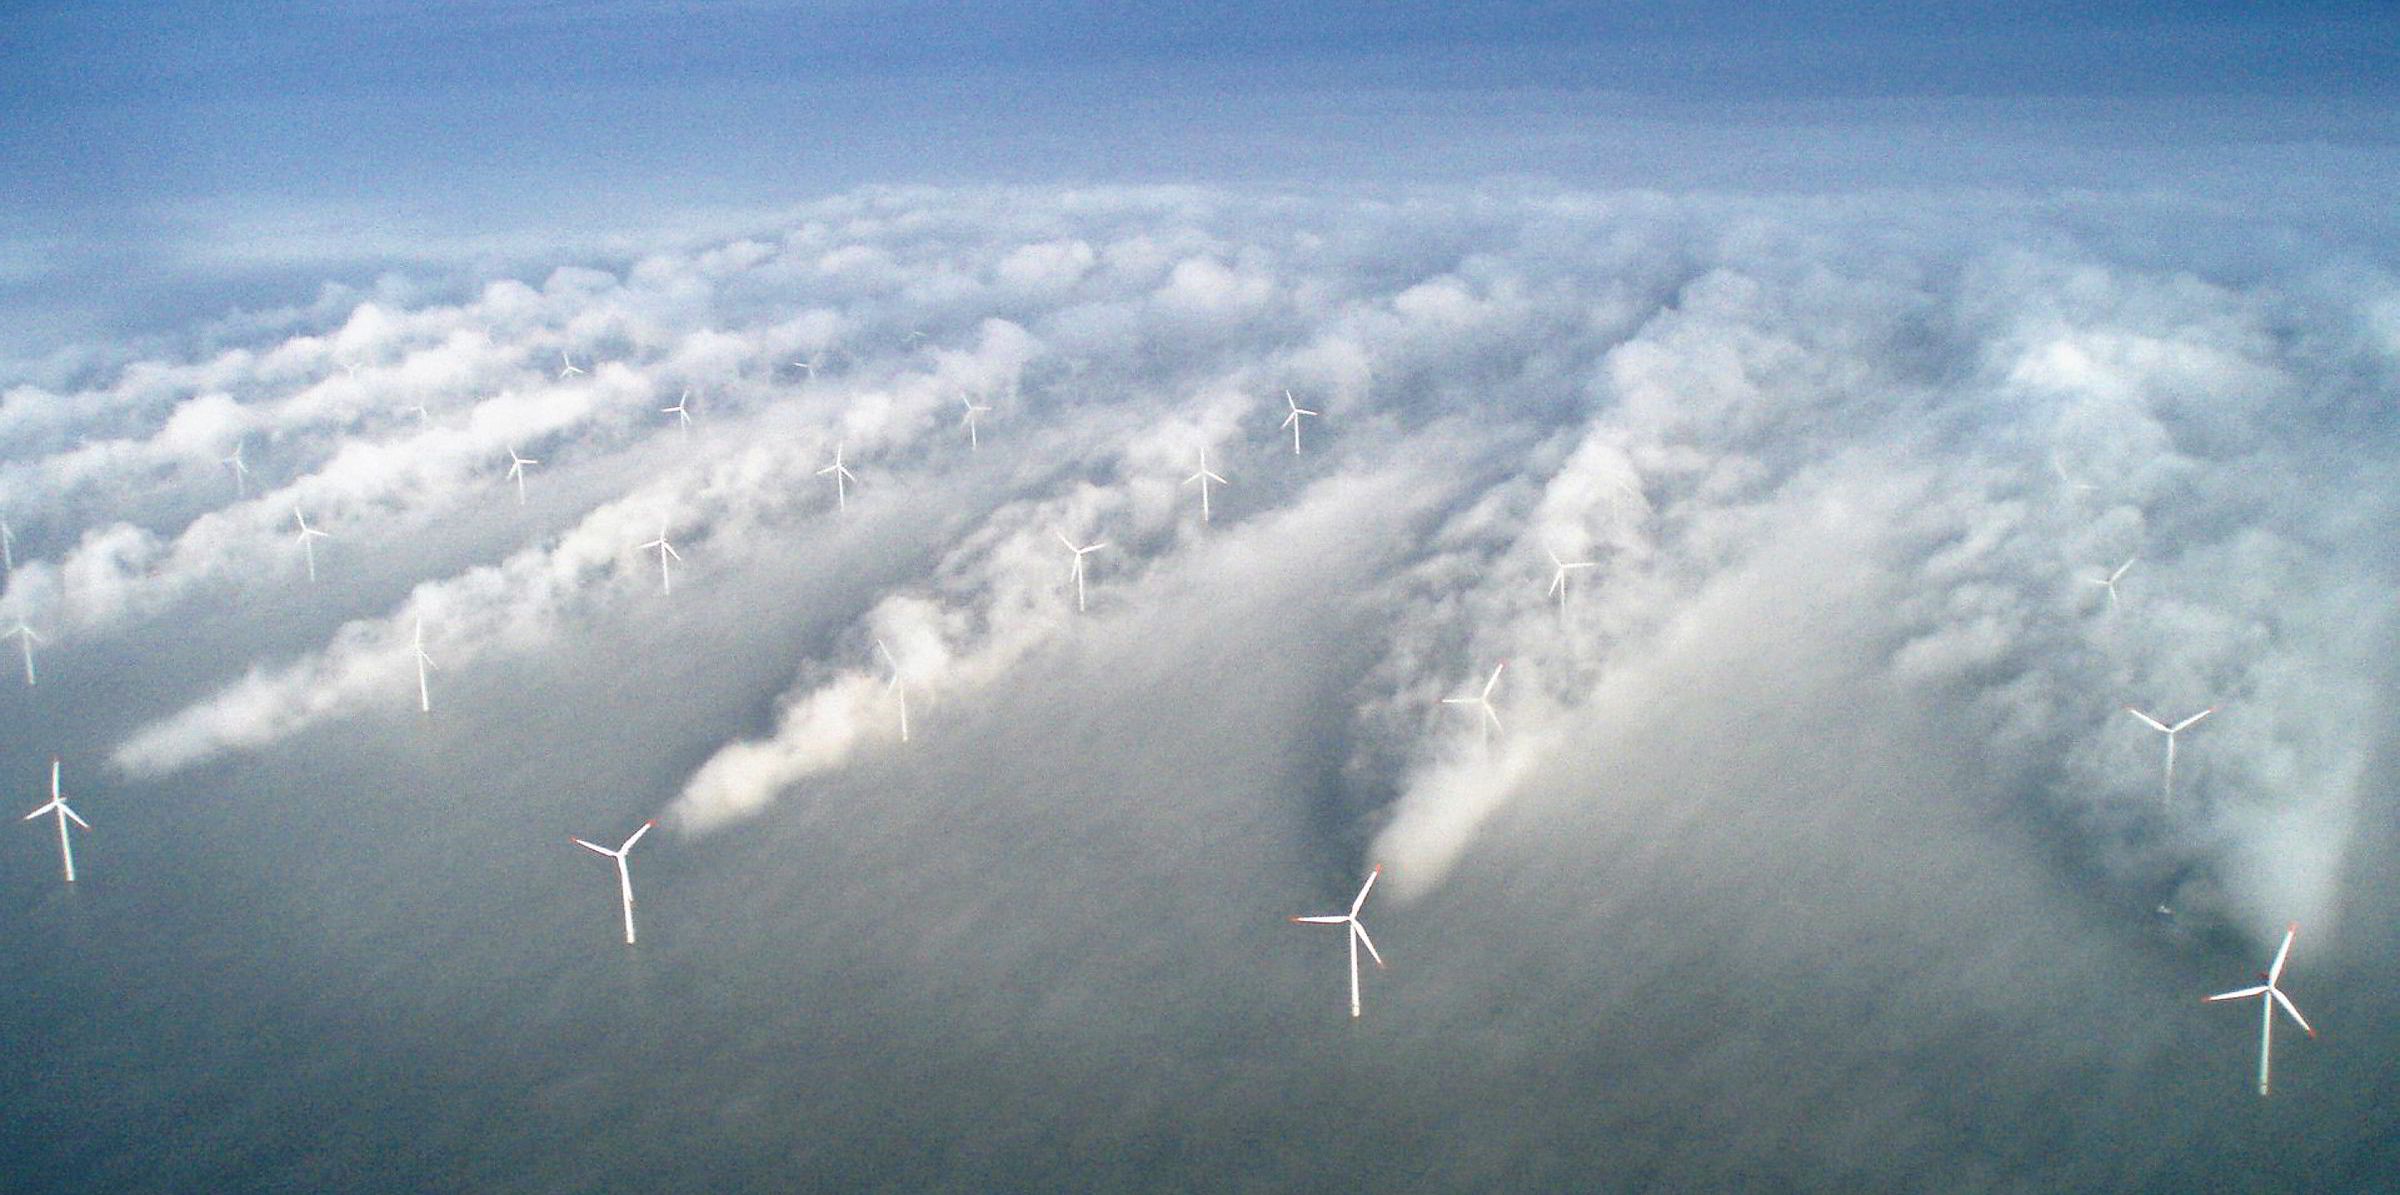 اثر دنباله ای - سایه باد روی توربین های بادی دریایی هنگام مه